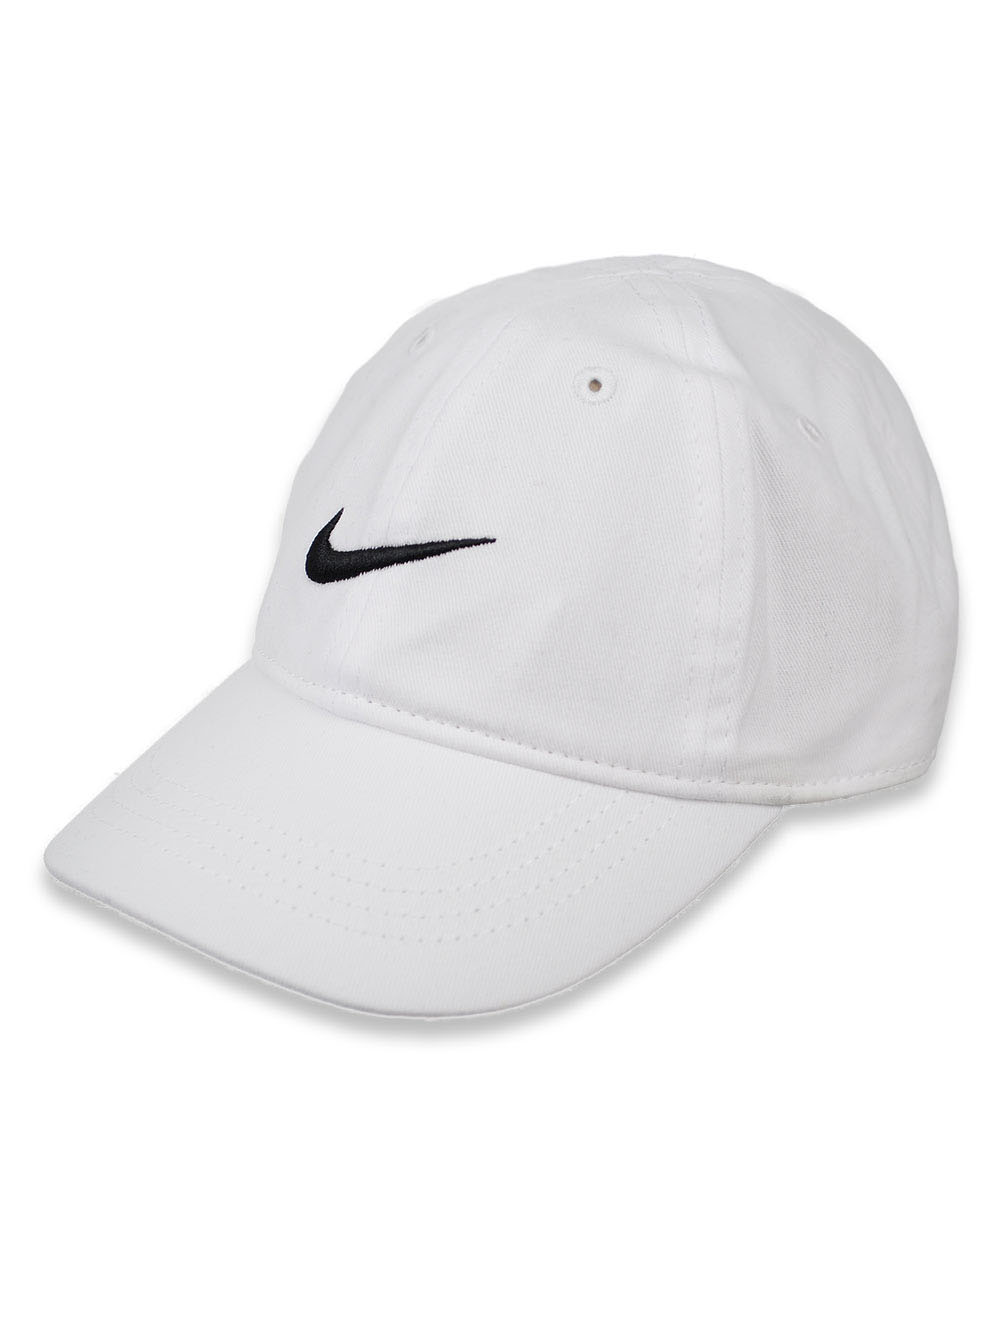 girls white baseball cap